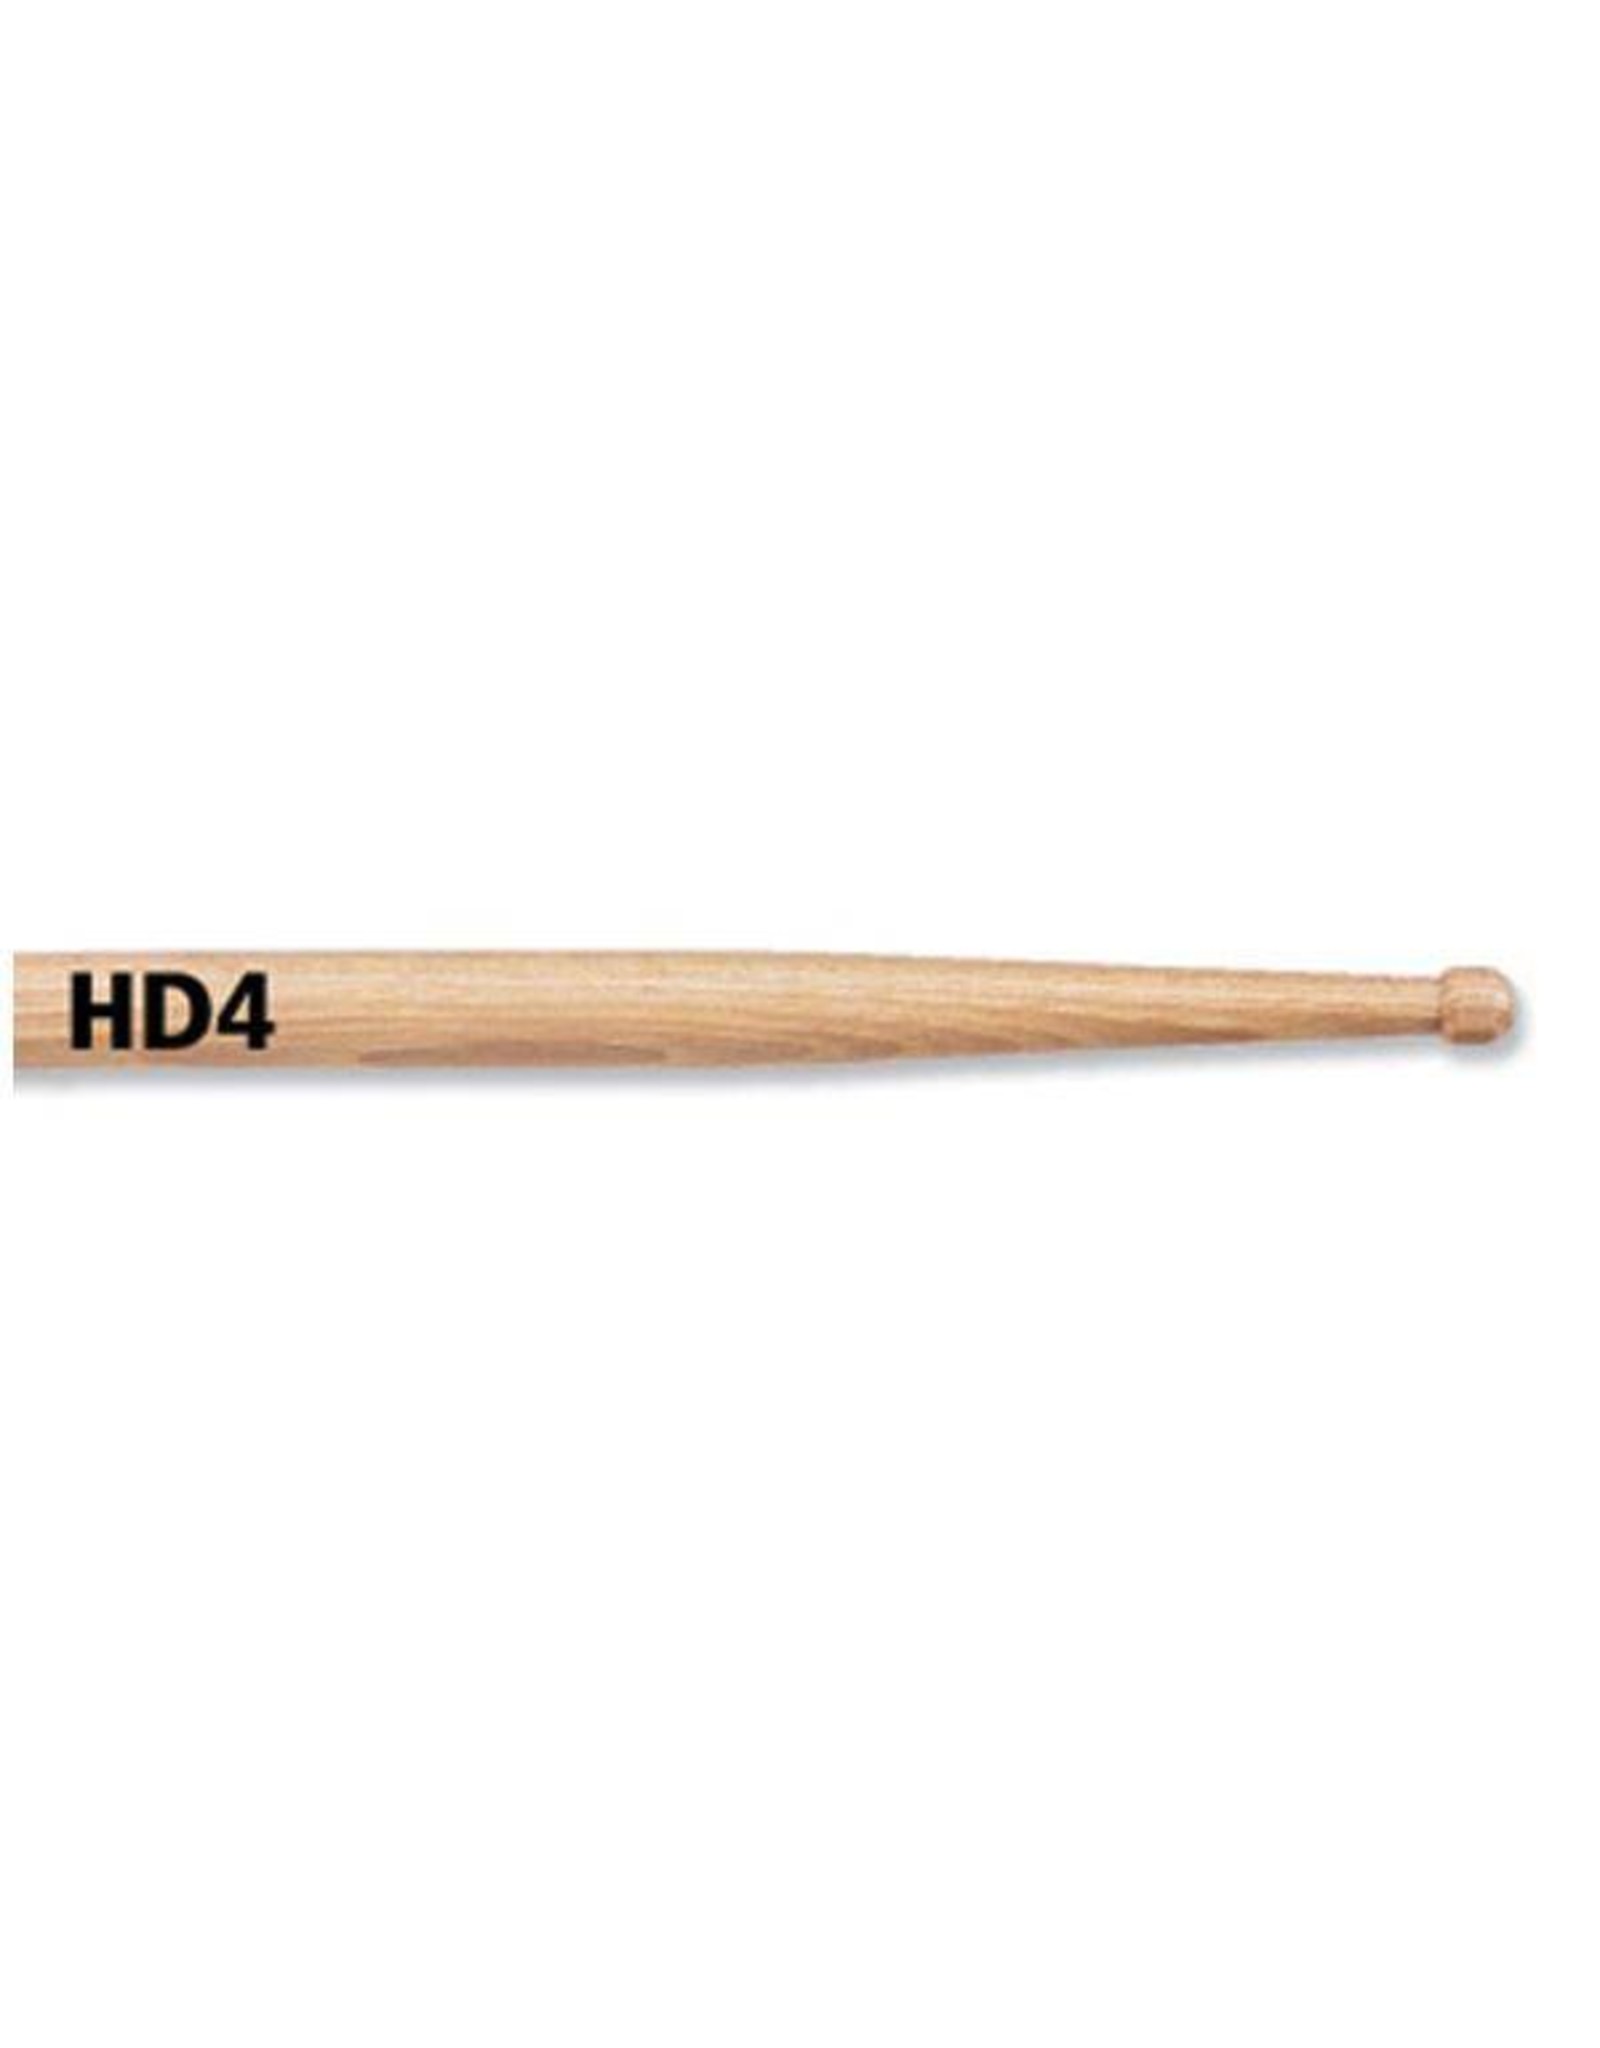 Vic Firth HD4 drumsticks